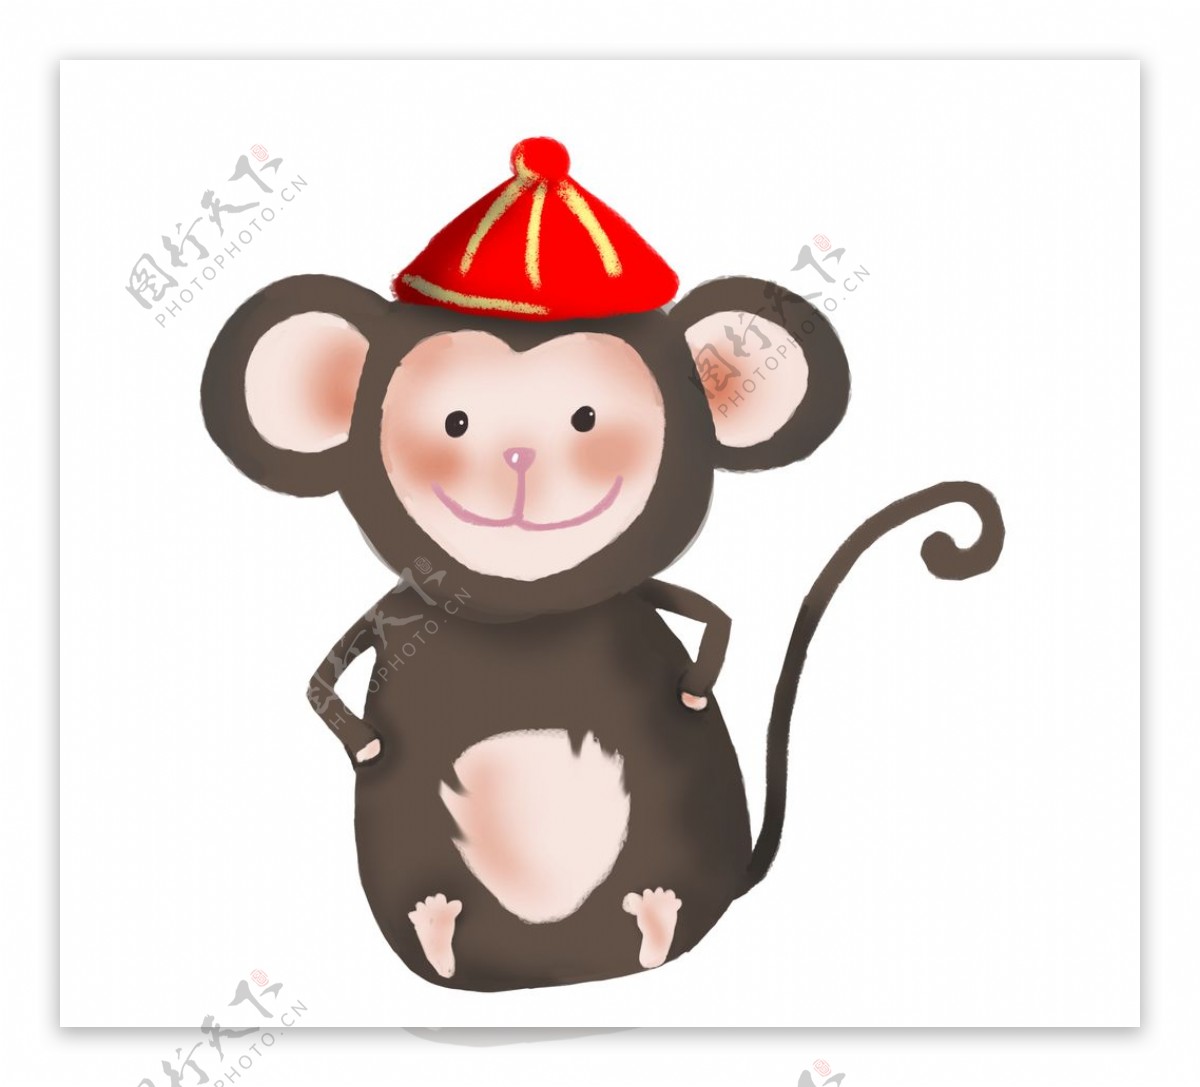 戴帽子的小猴子插画图片